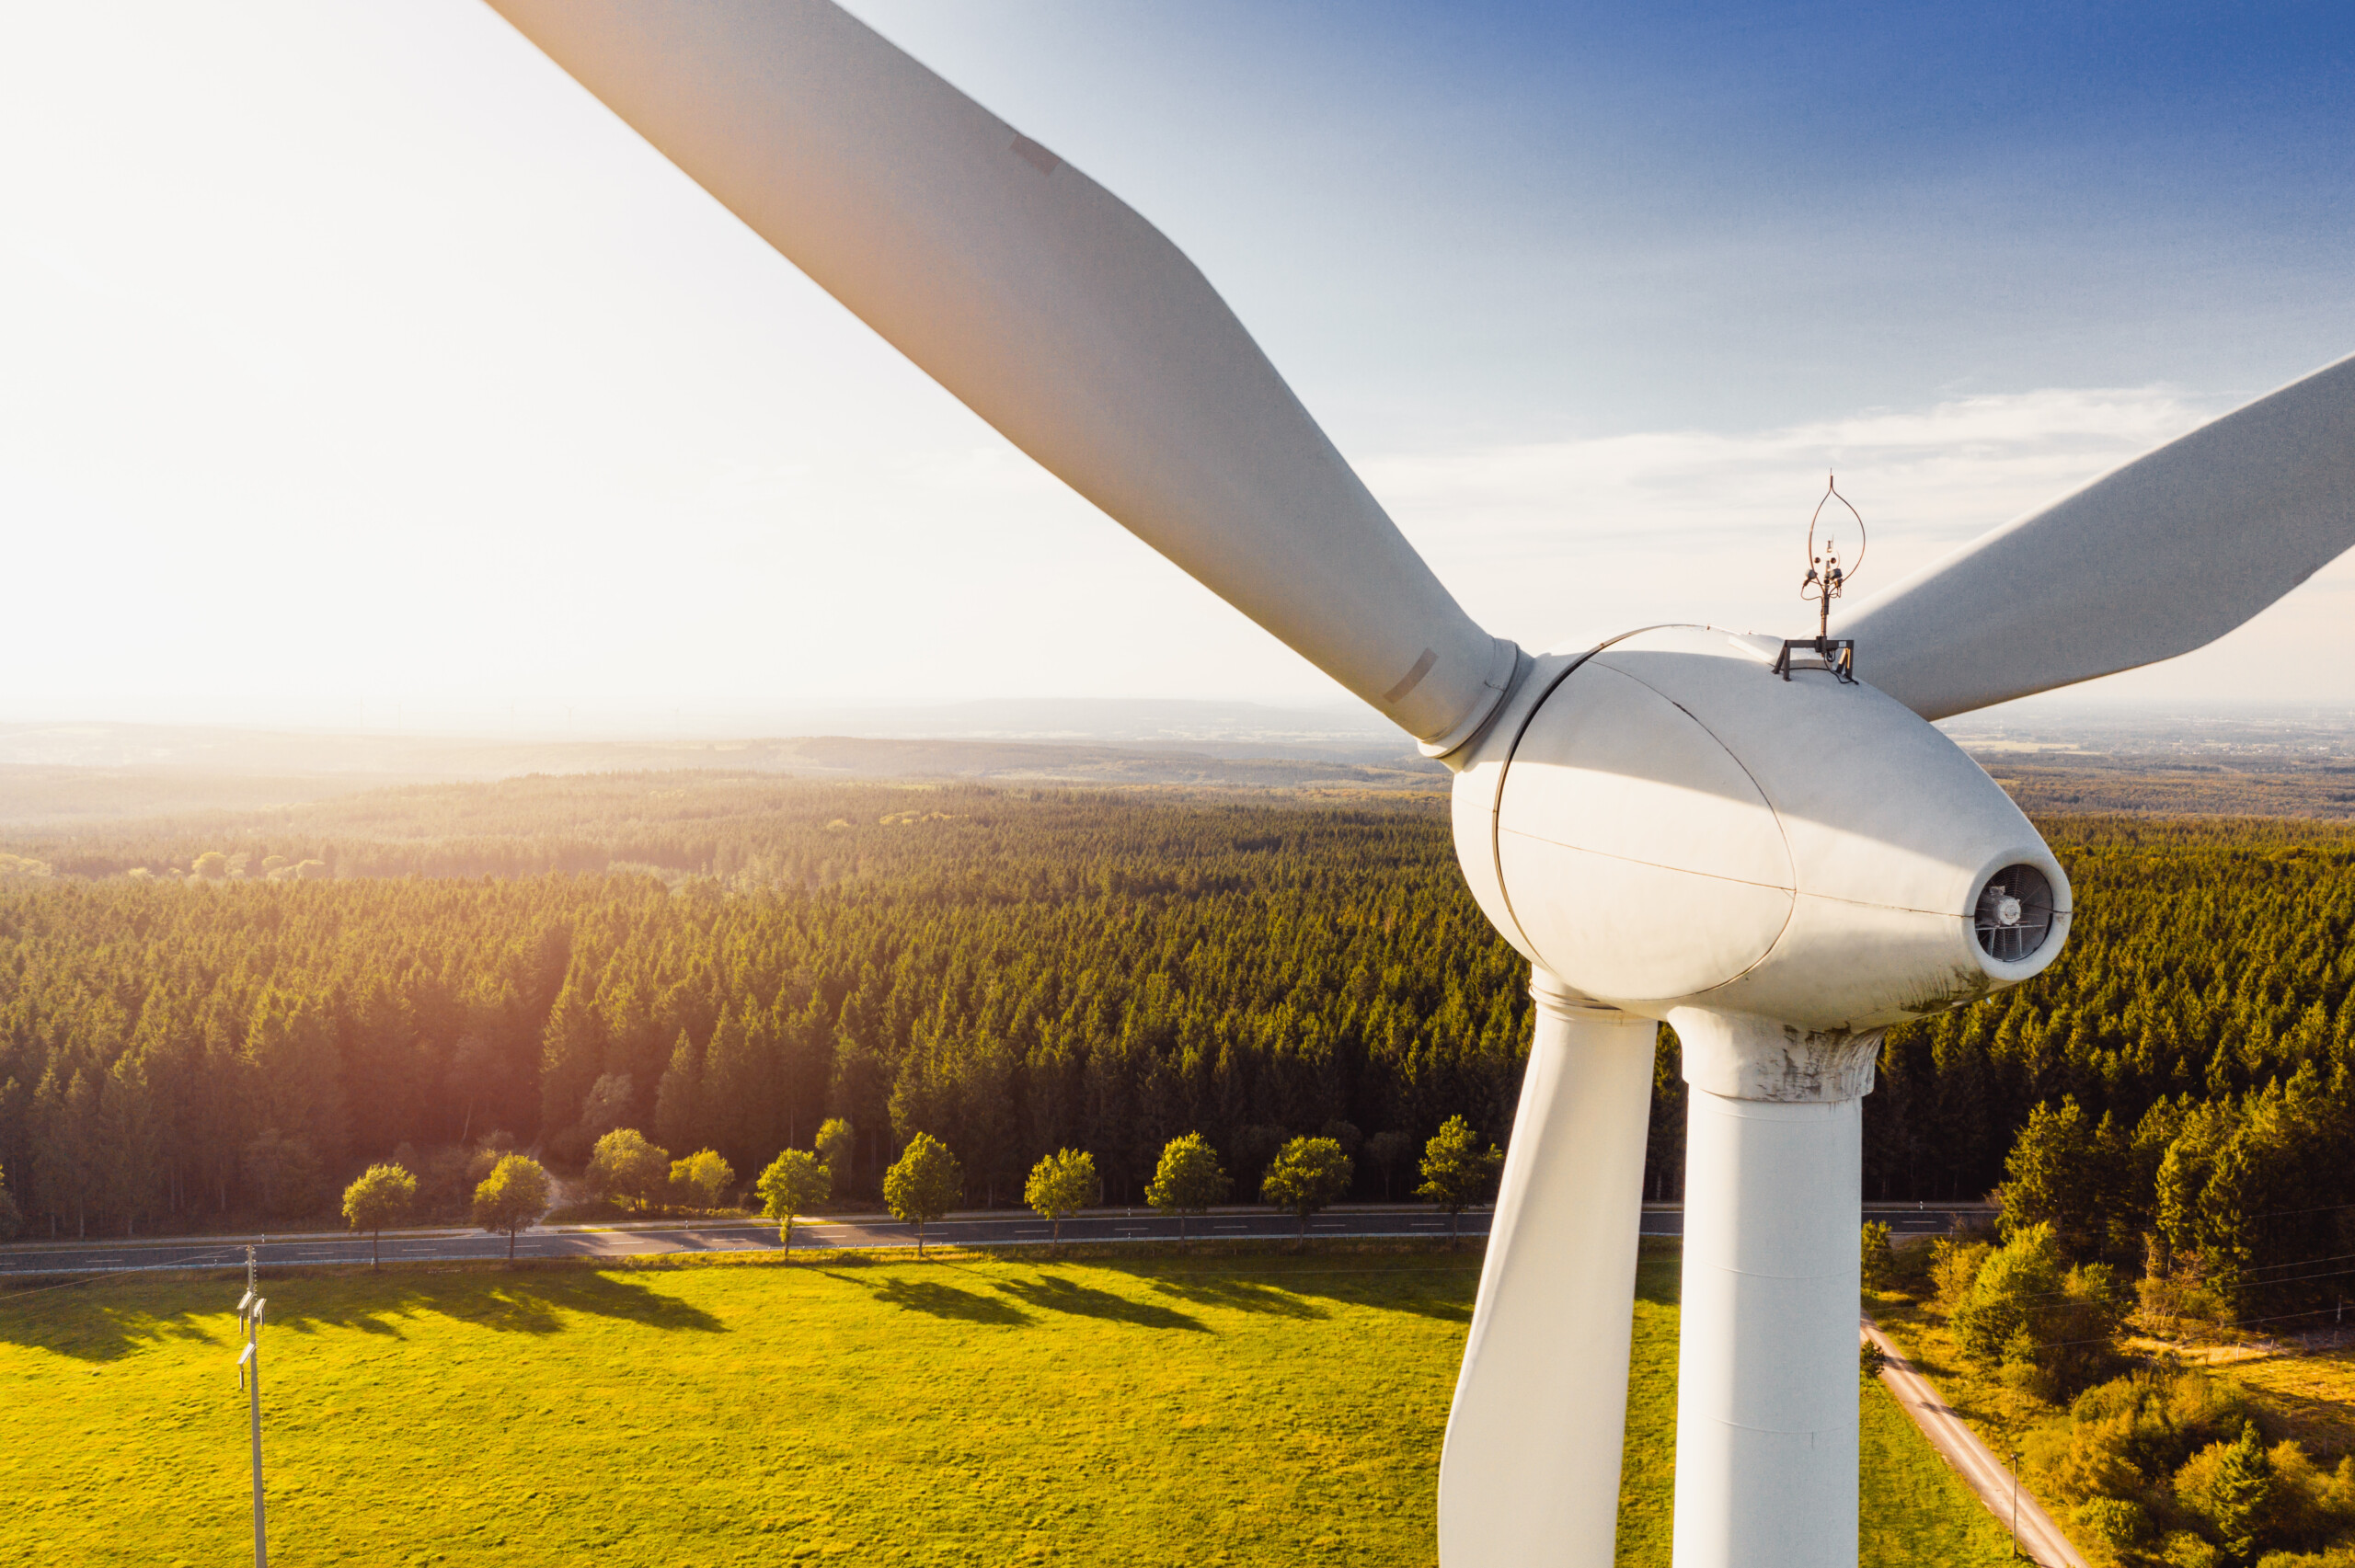 Wind Turbines Windmill Energy